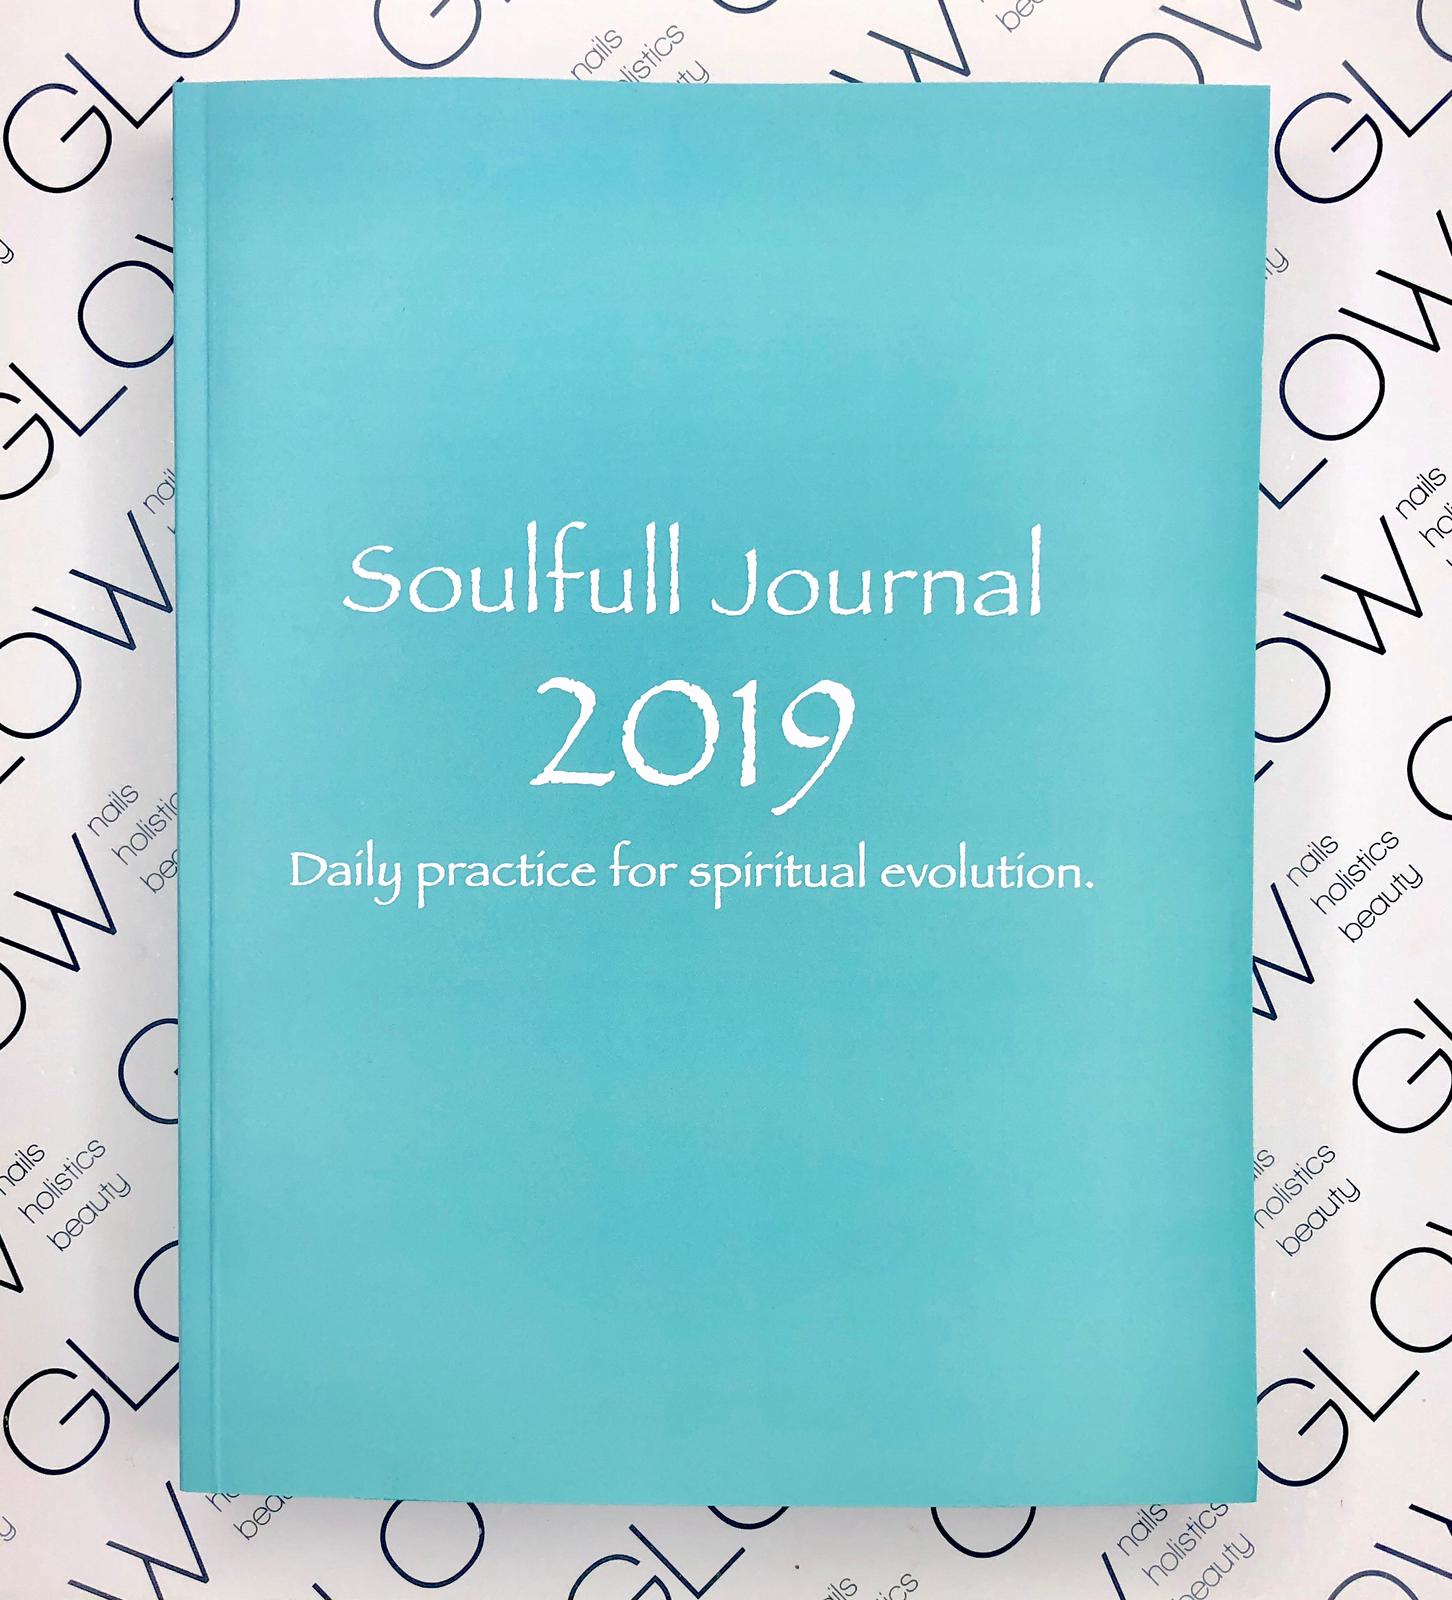 Soulfull Journal